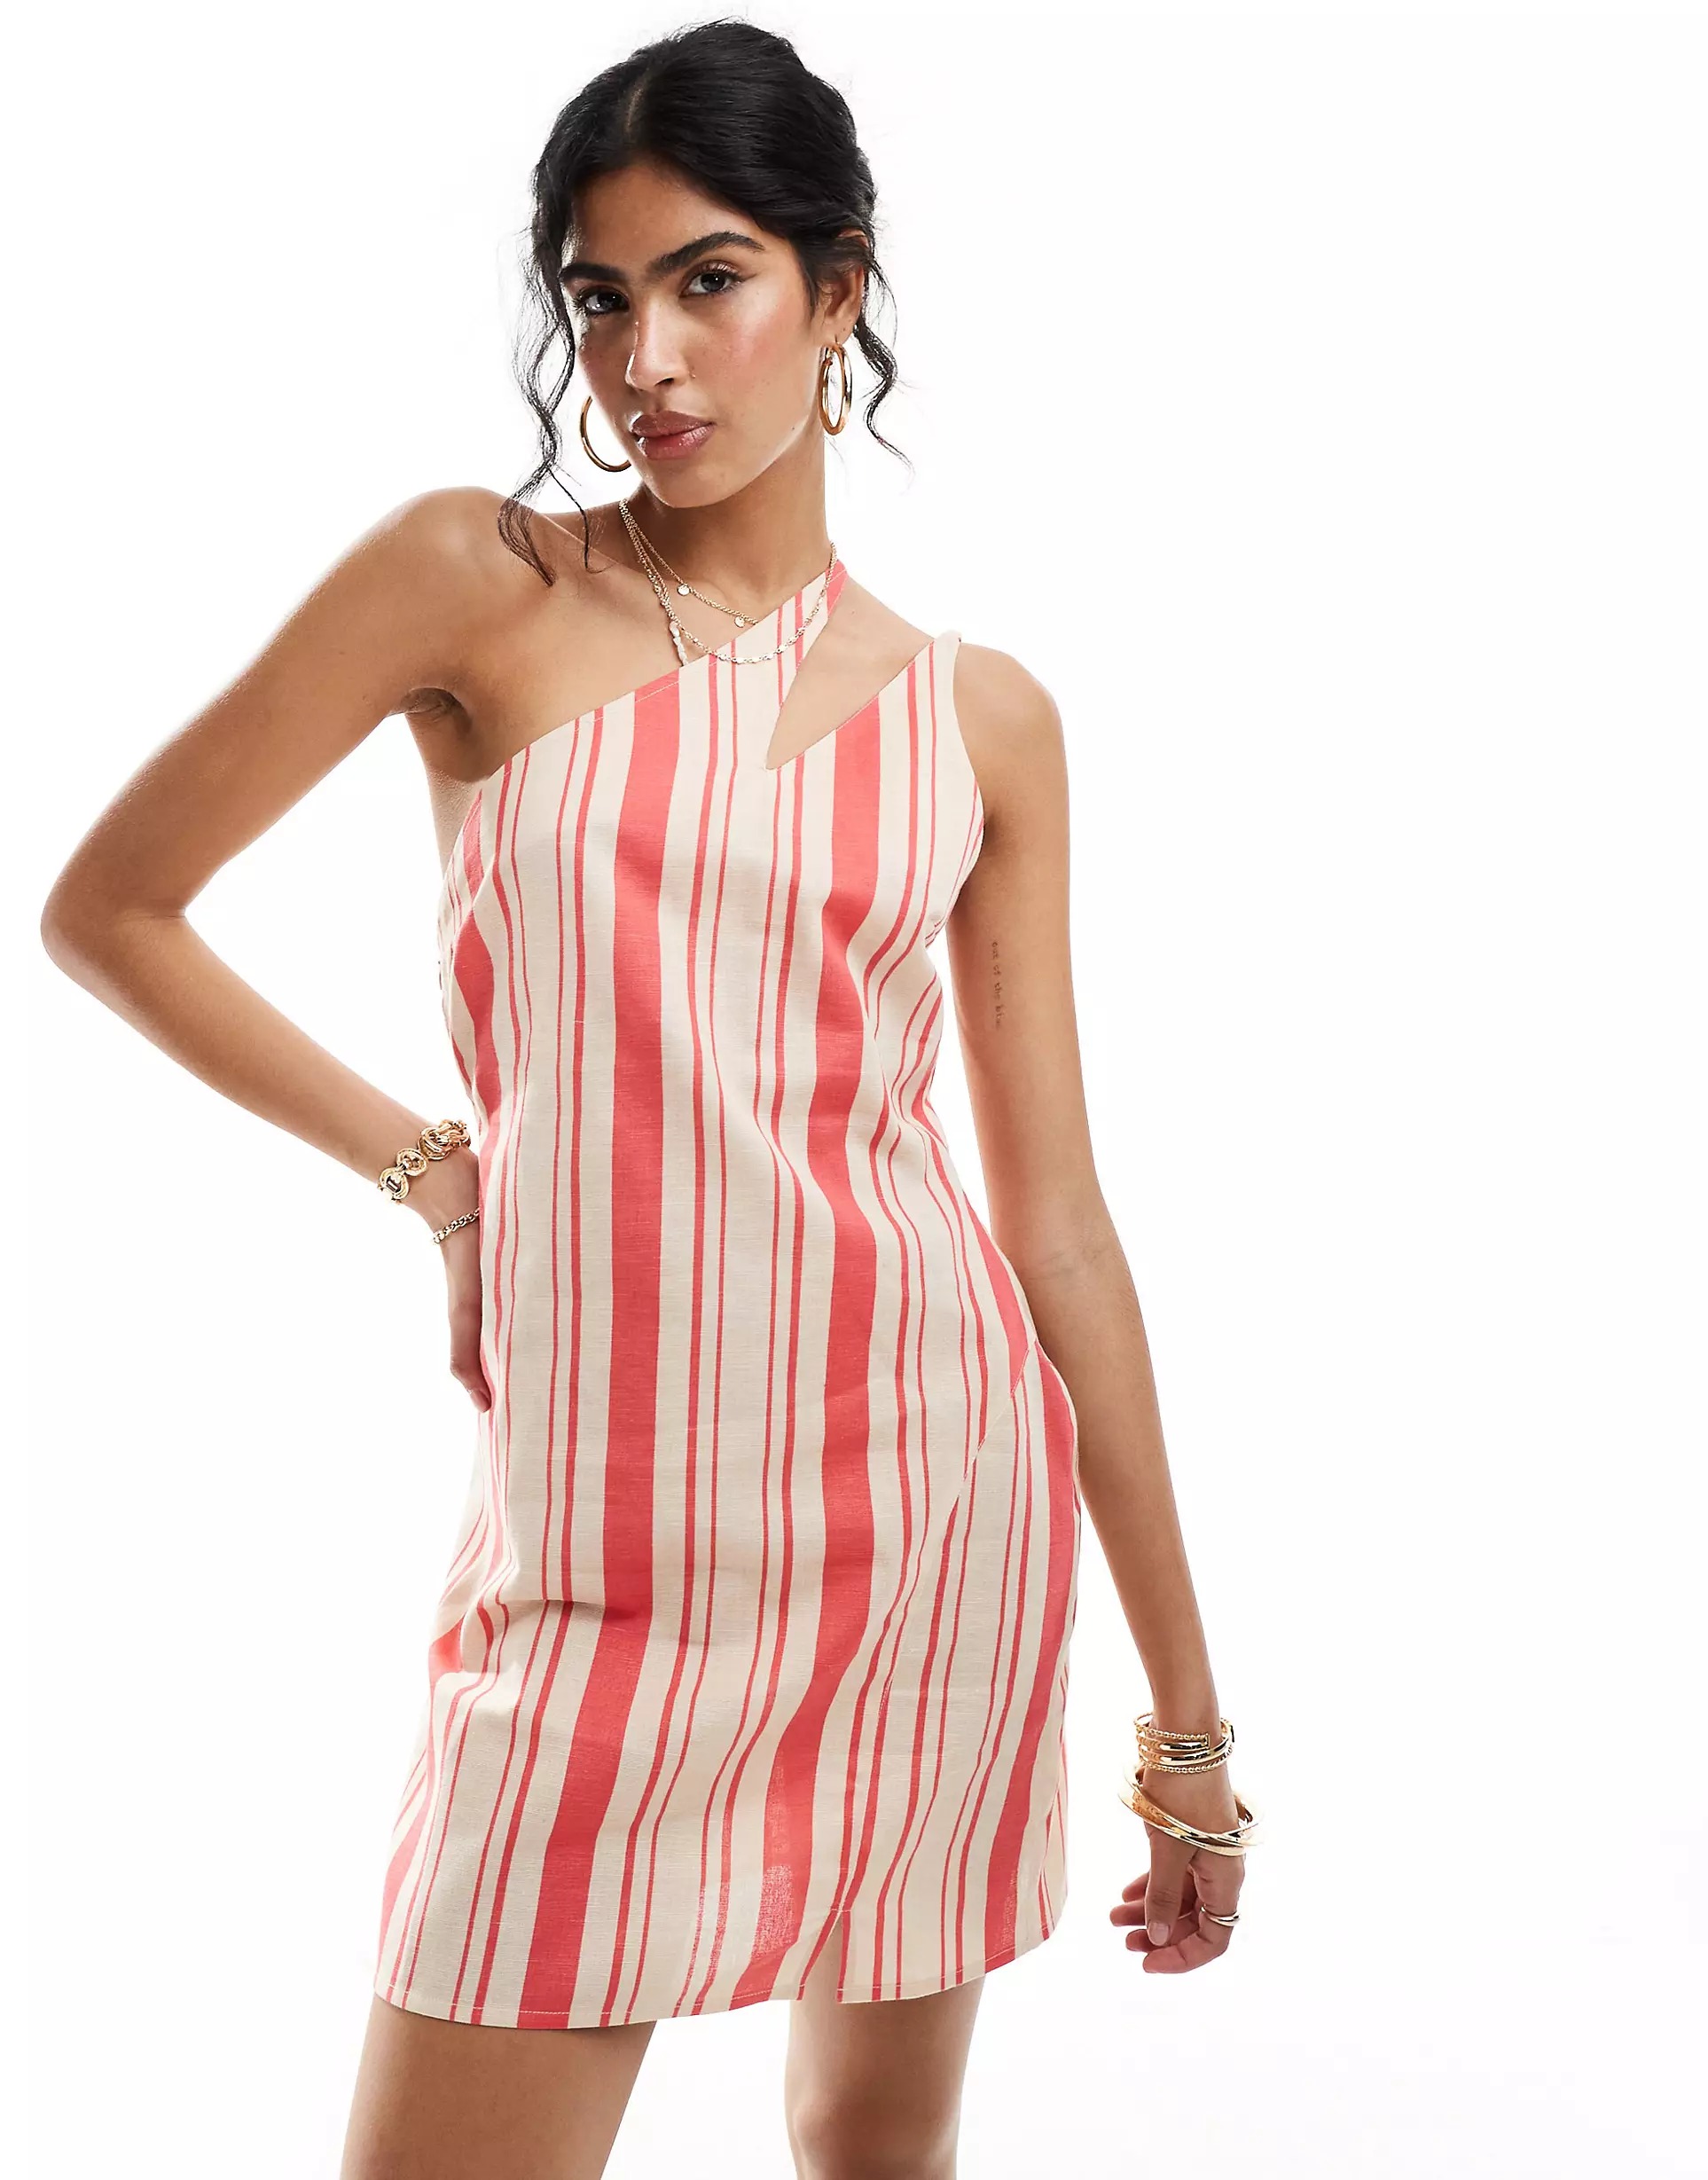 Платье мини Asos Design One-shoulder, Striped Linen With Slit Straps, розовый, красный